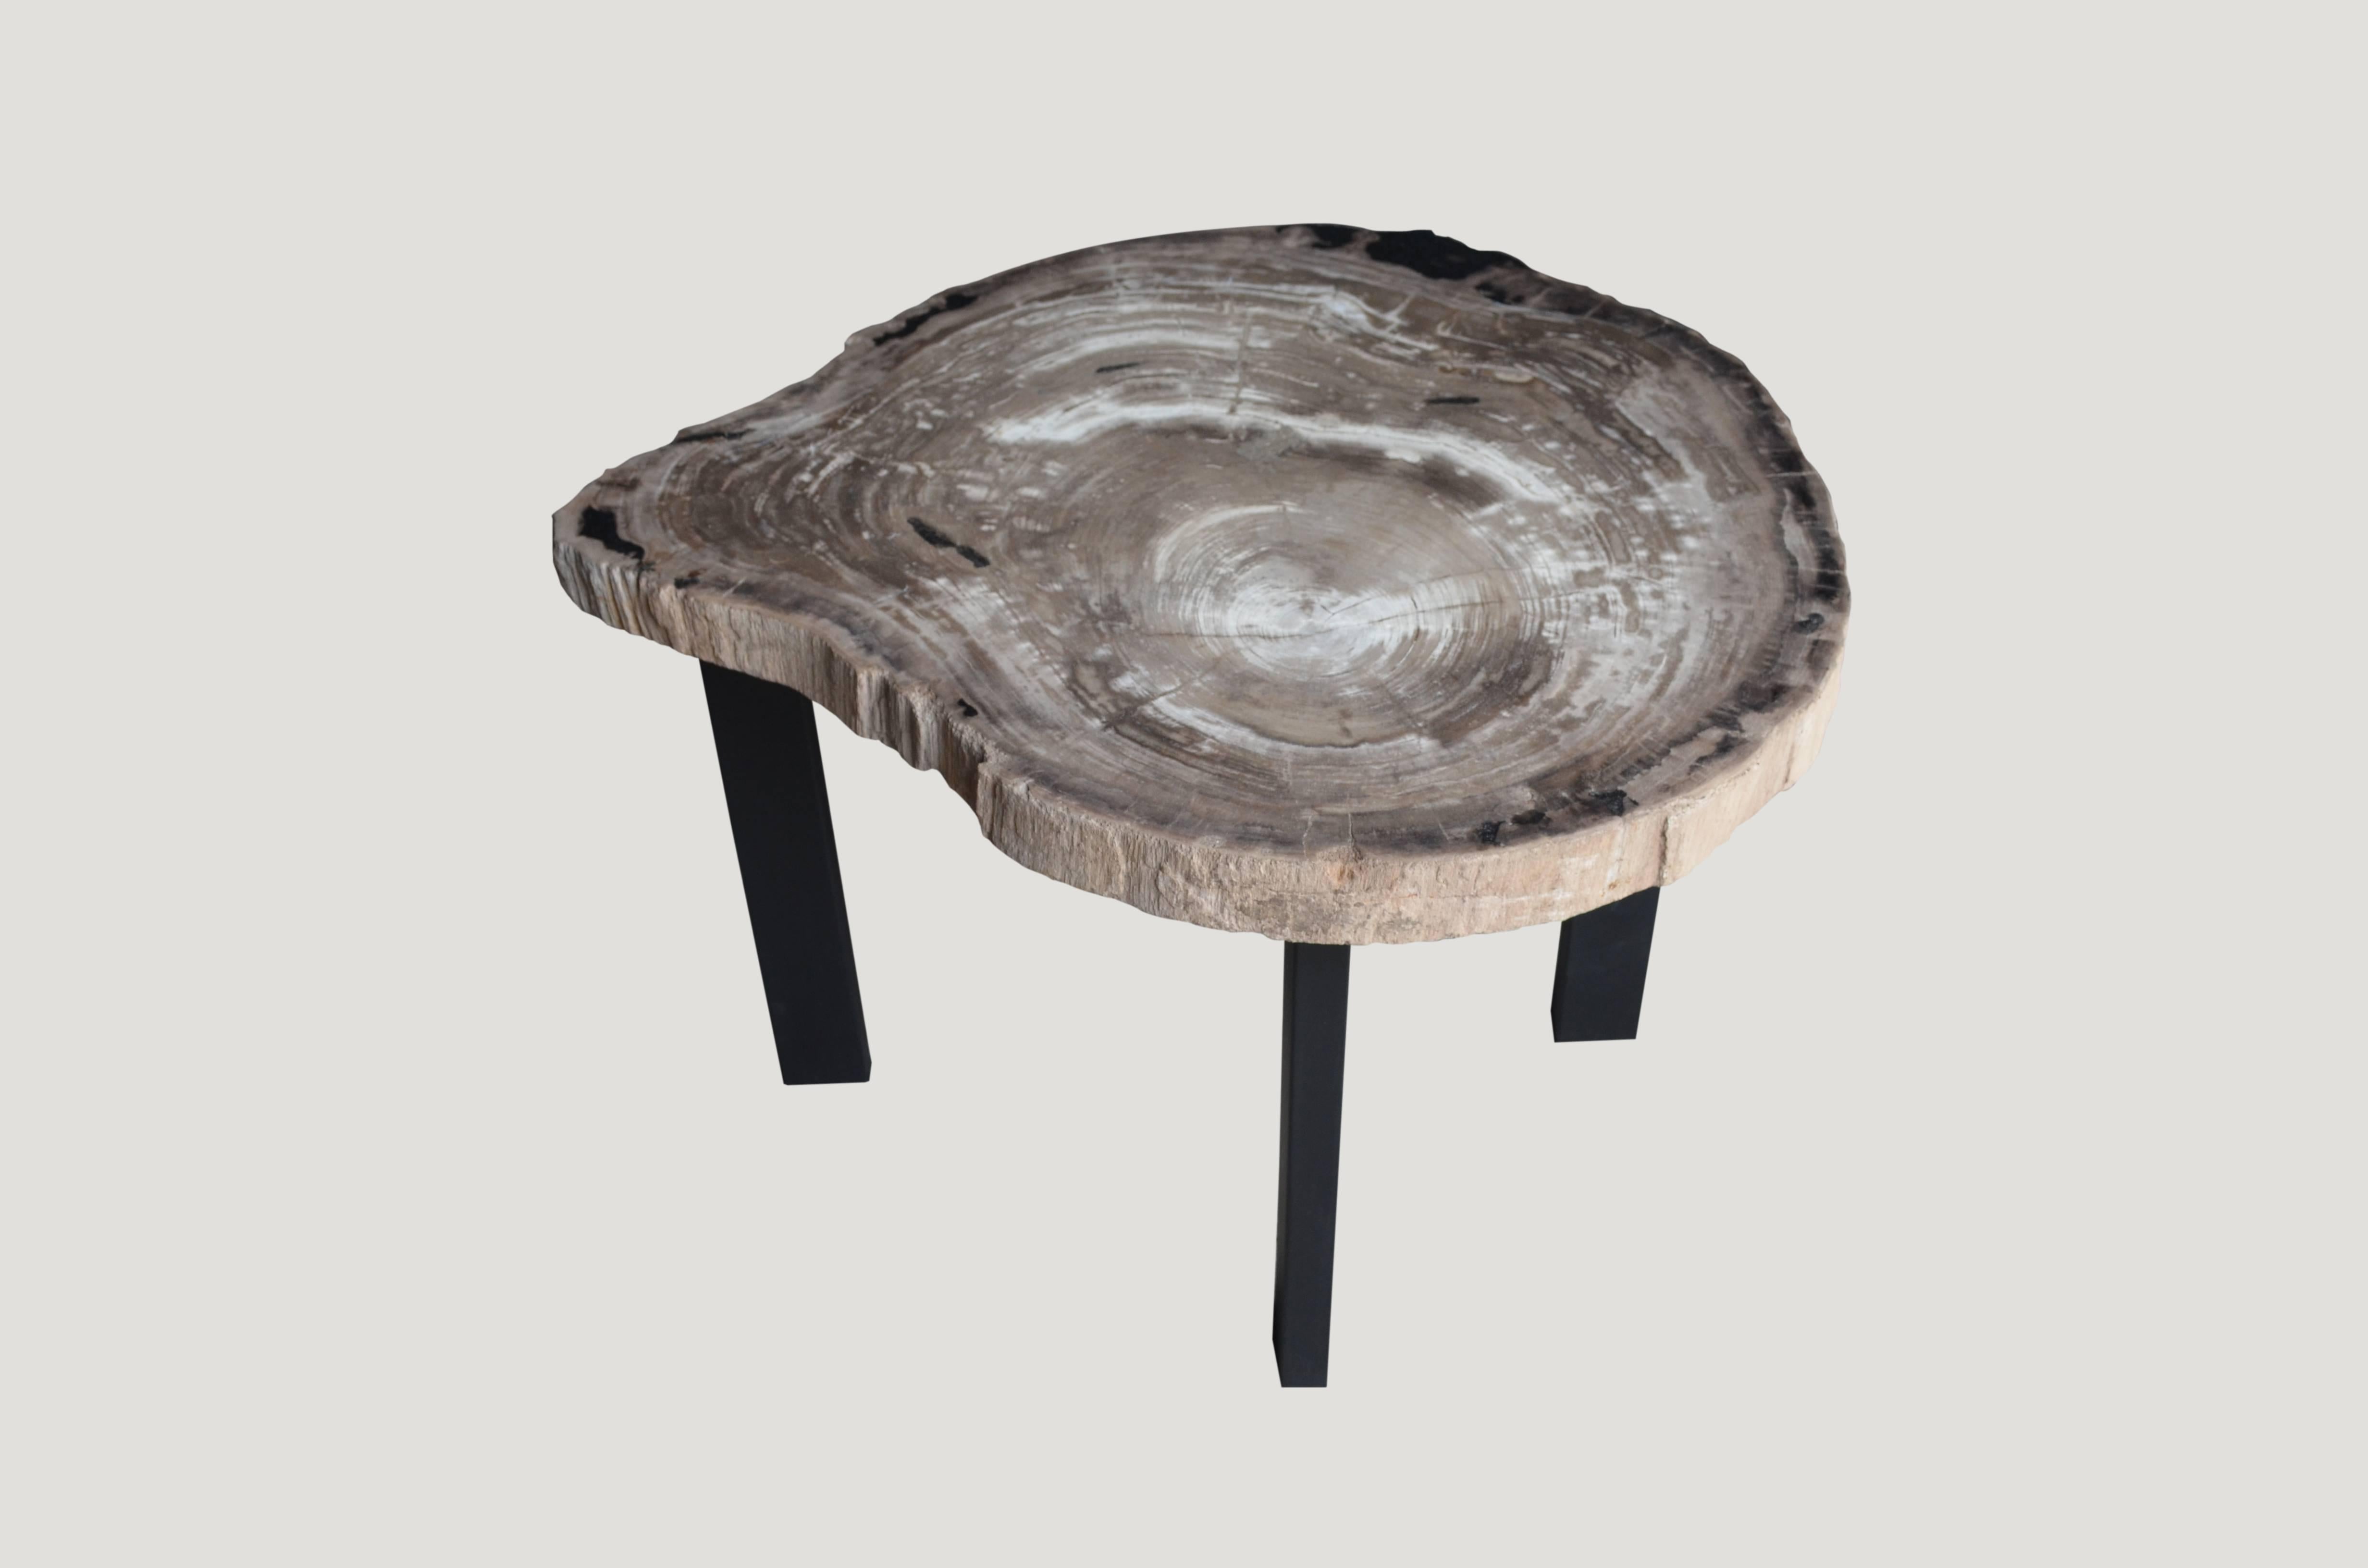 Rare table d'appoint en bois pétrifié de haute qualité. Posé sur un socle minimaliste en acier noir.

Comme pour un diamant, nous polissons le bois pétrifié fossilisé de la plus haute qualité, en utilisant notre dernière technologie de pointe pour